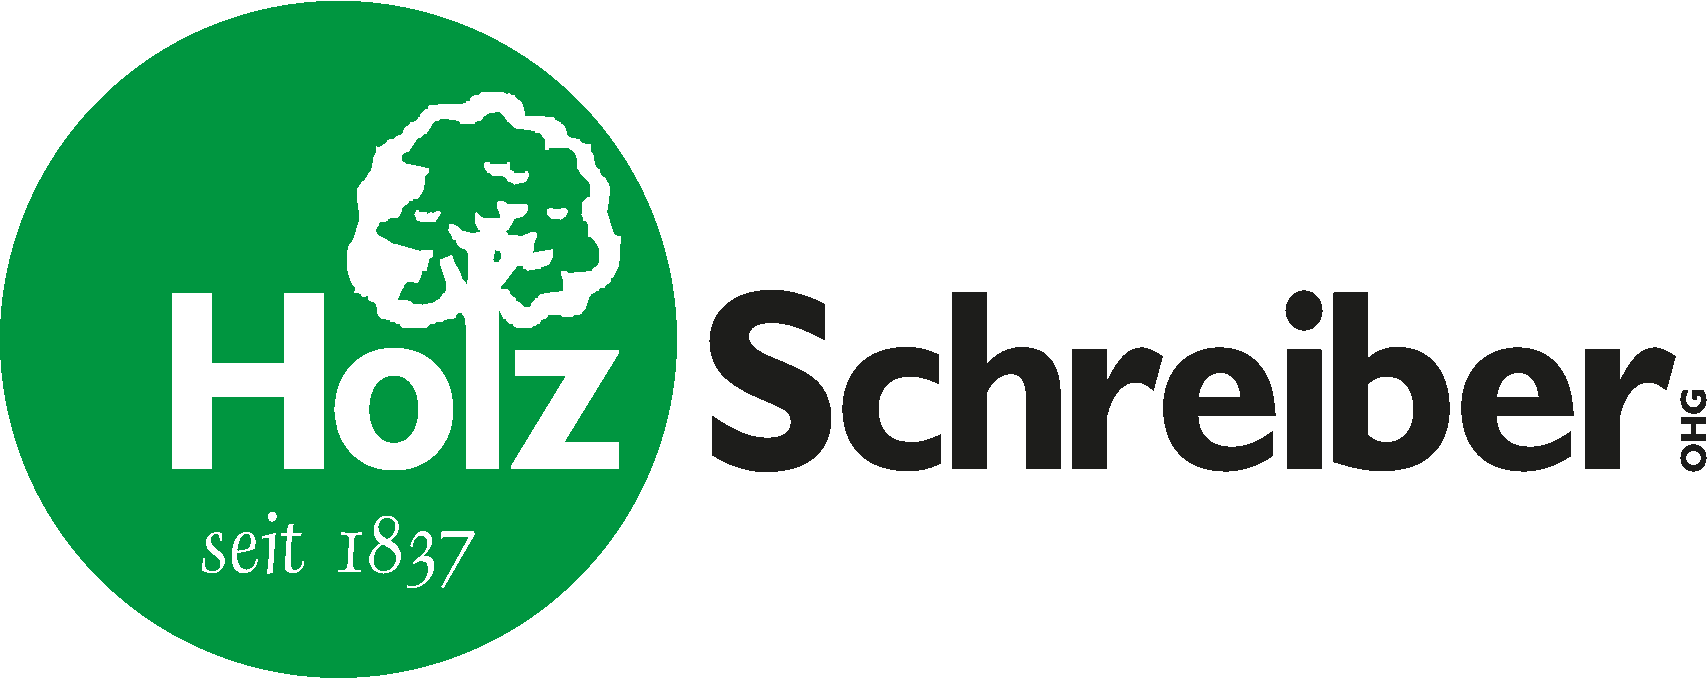 Logo_HolzSchreiber_transp.png